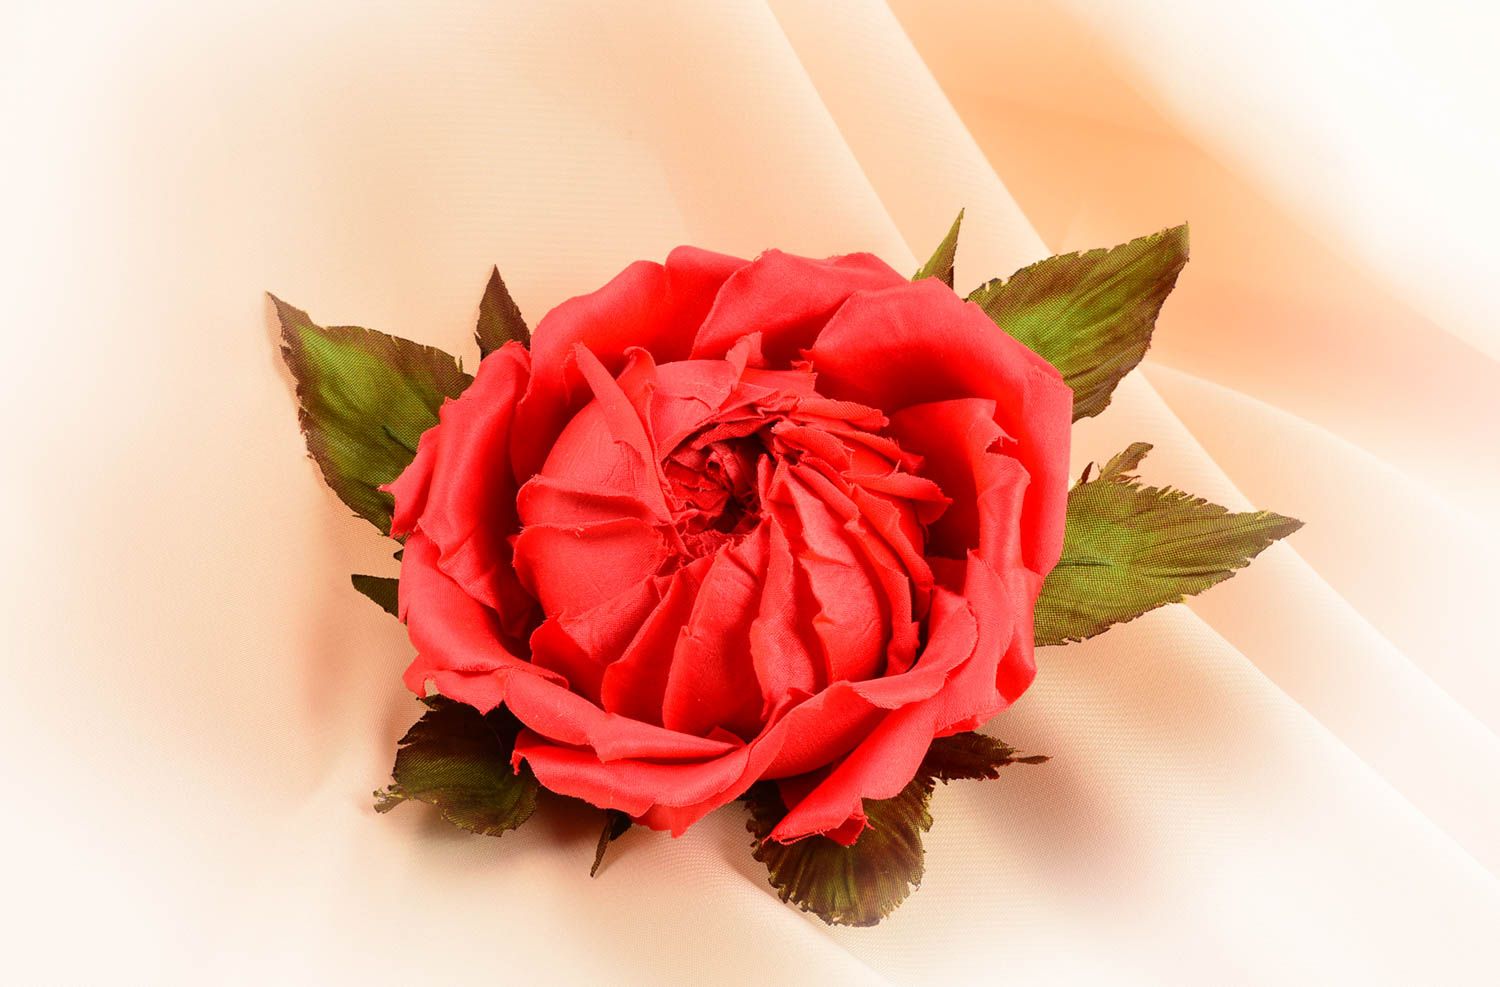 Брошь из шелка хэнд мэйд брошь-заколка красная роза авторская бижутерия фото 1